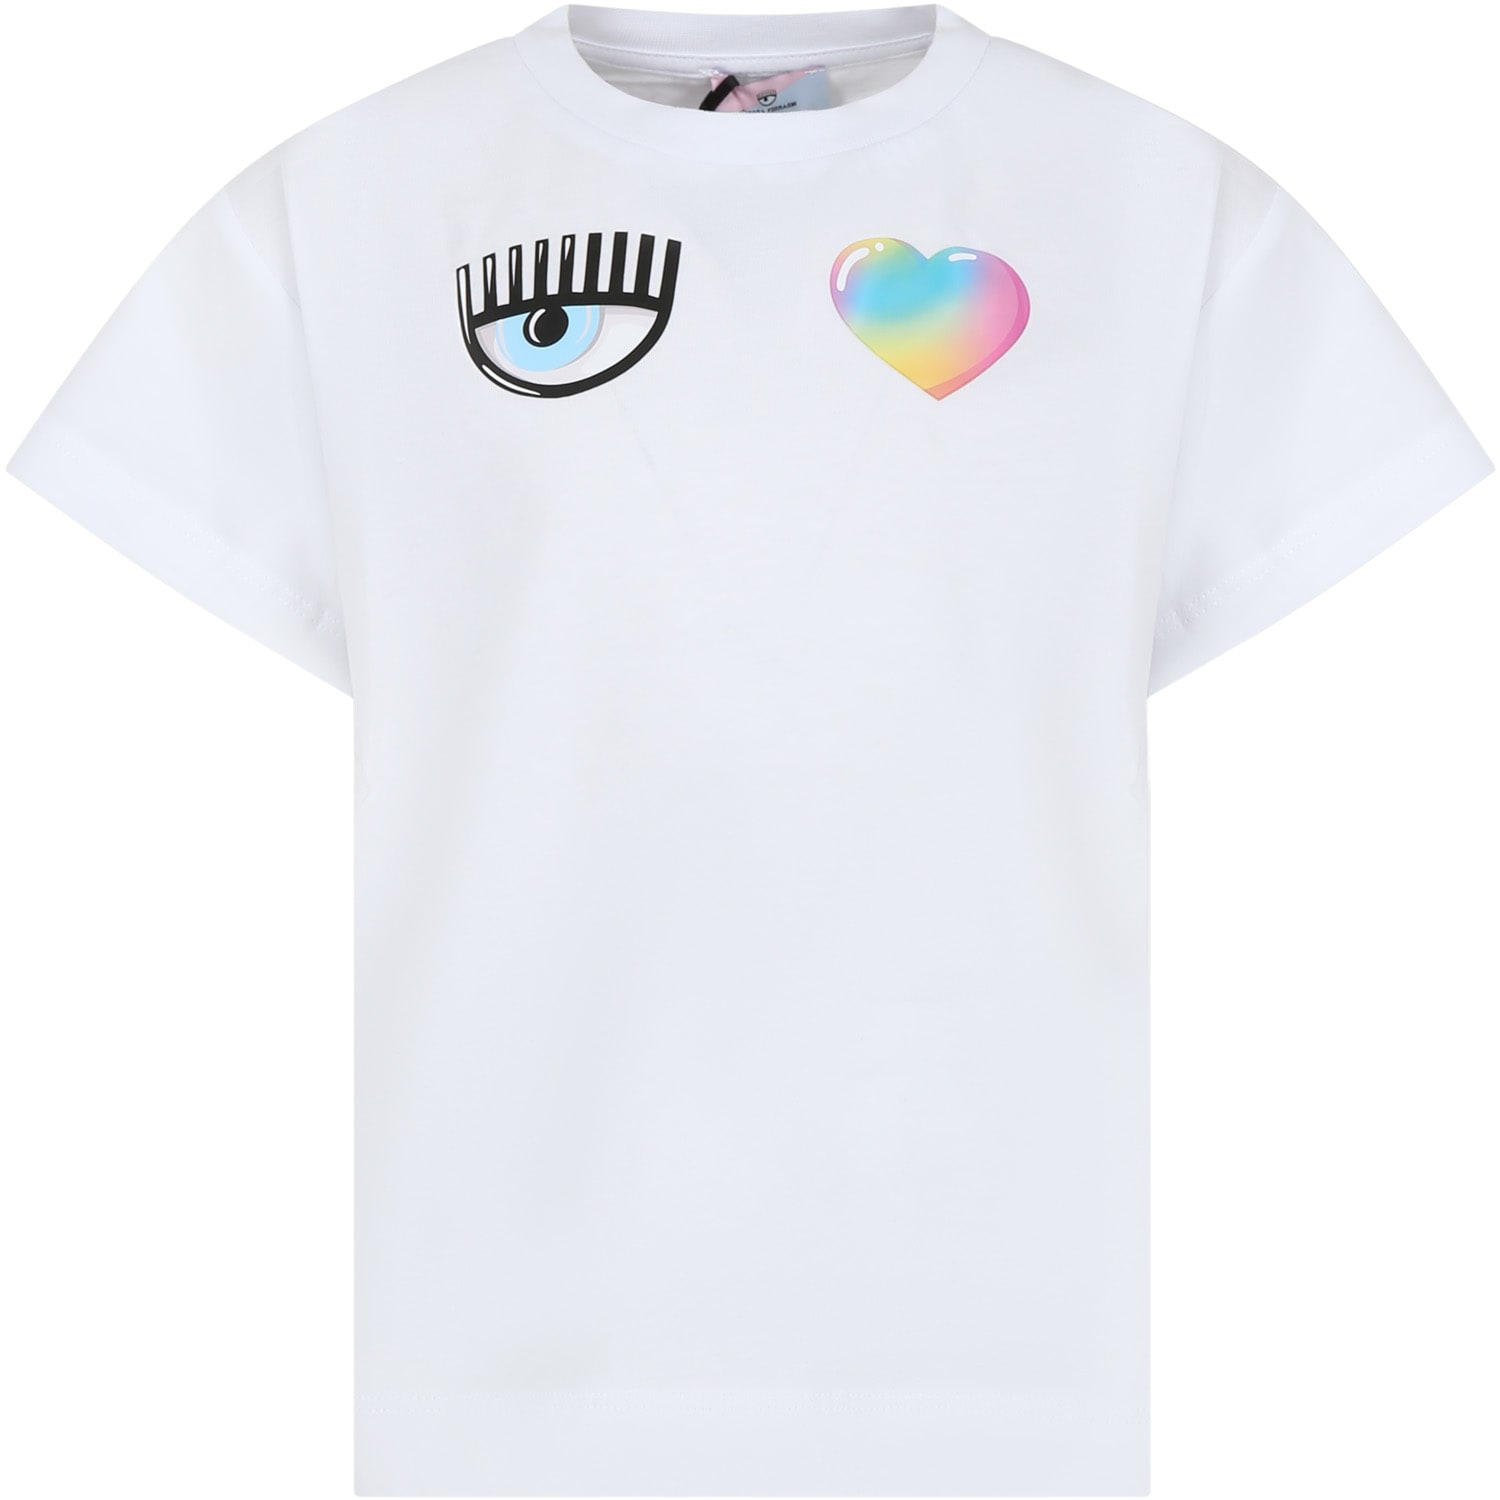 Chiara Ferragni Kids' White T-shirt For Girl With Flirting Eyes And Heart